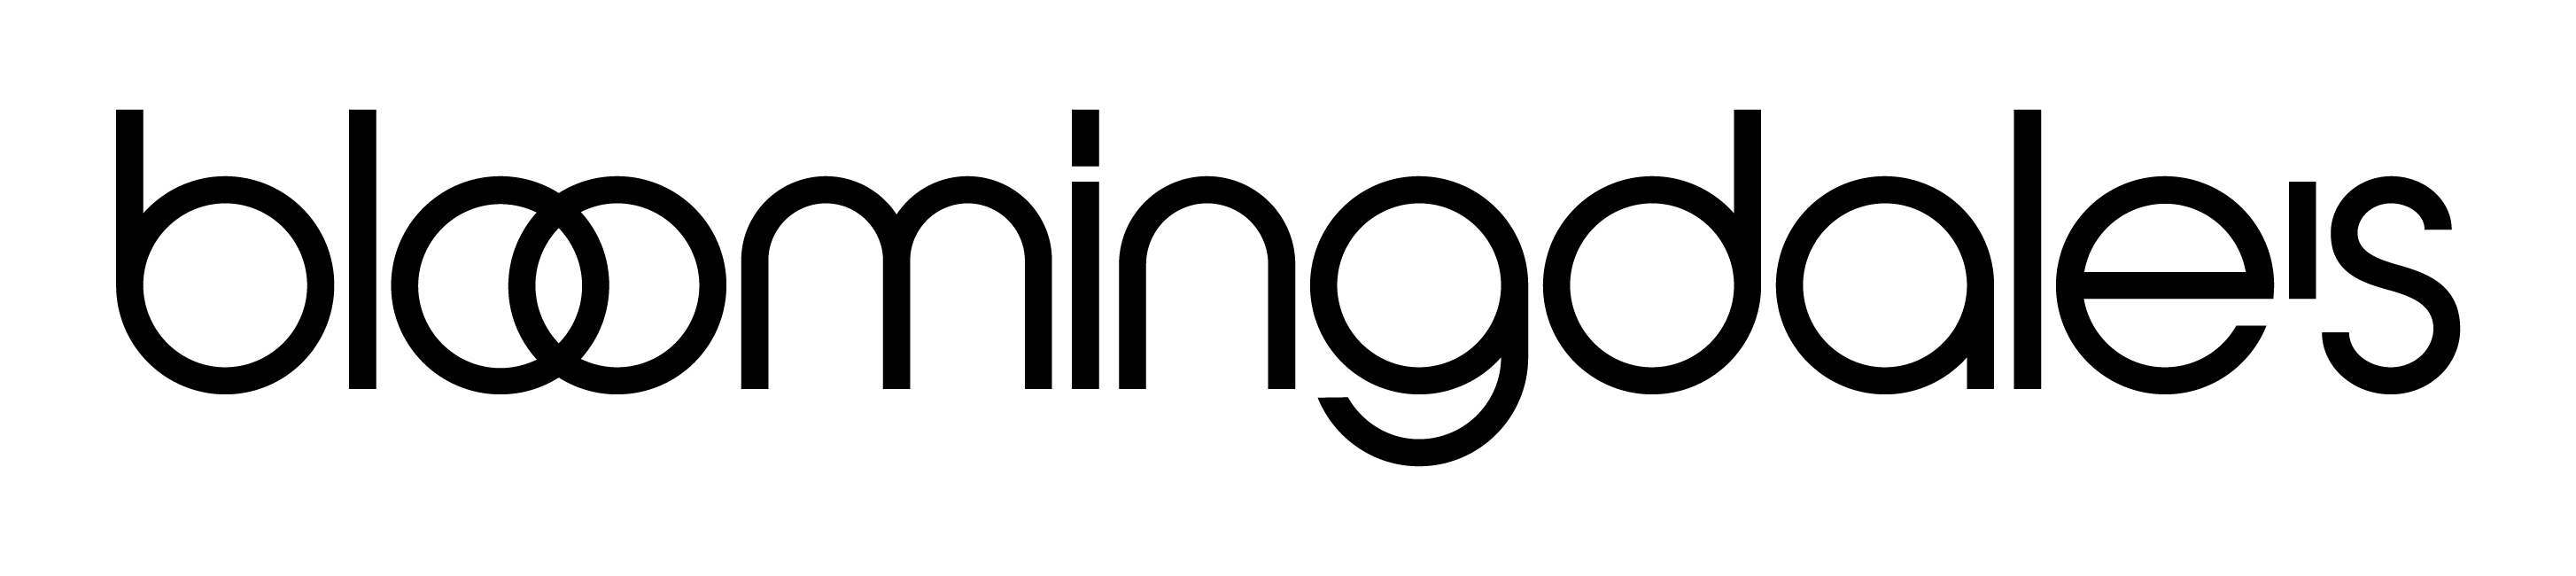 bloomingdales logo